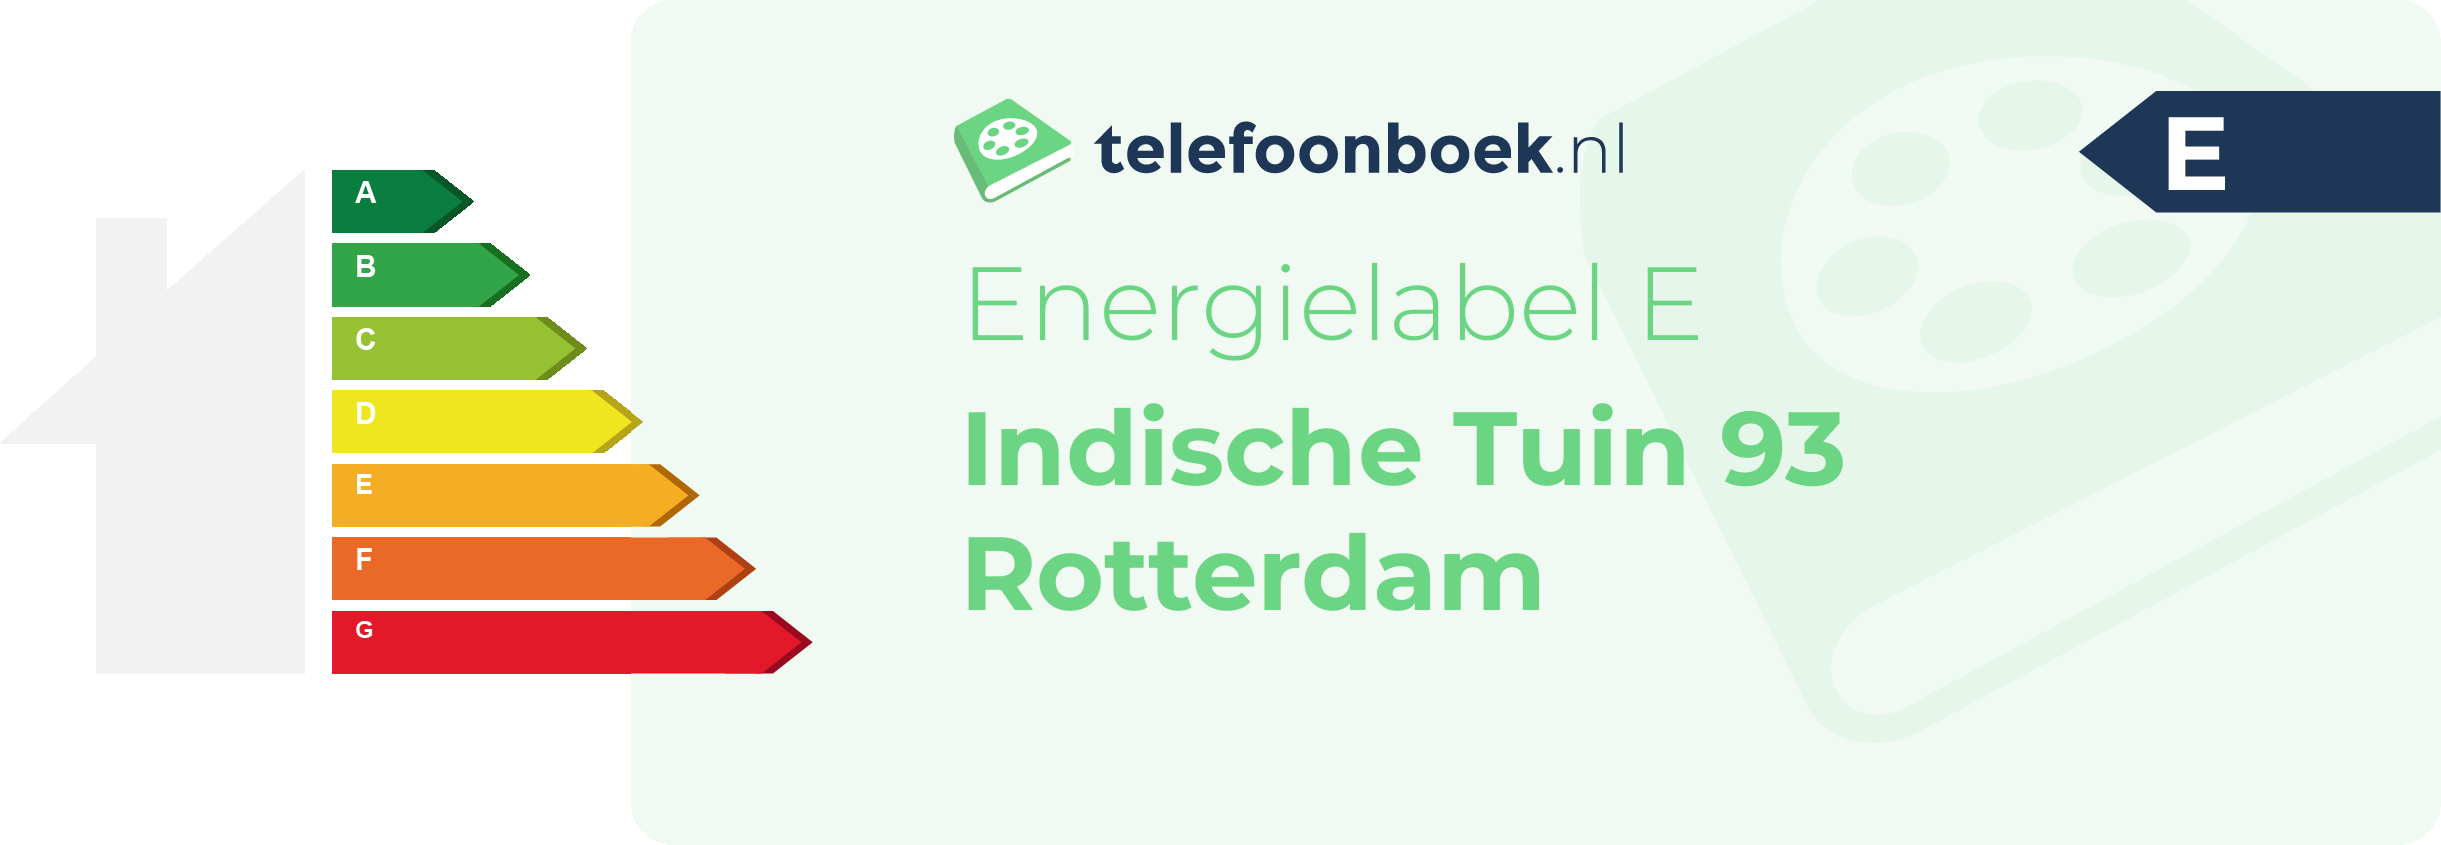 Energielabel Indische Tuin 93 Rotterdam